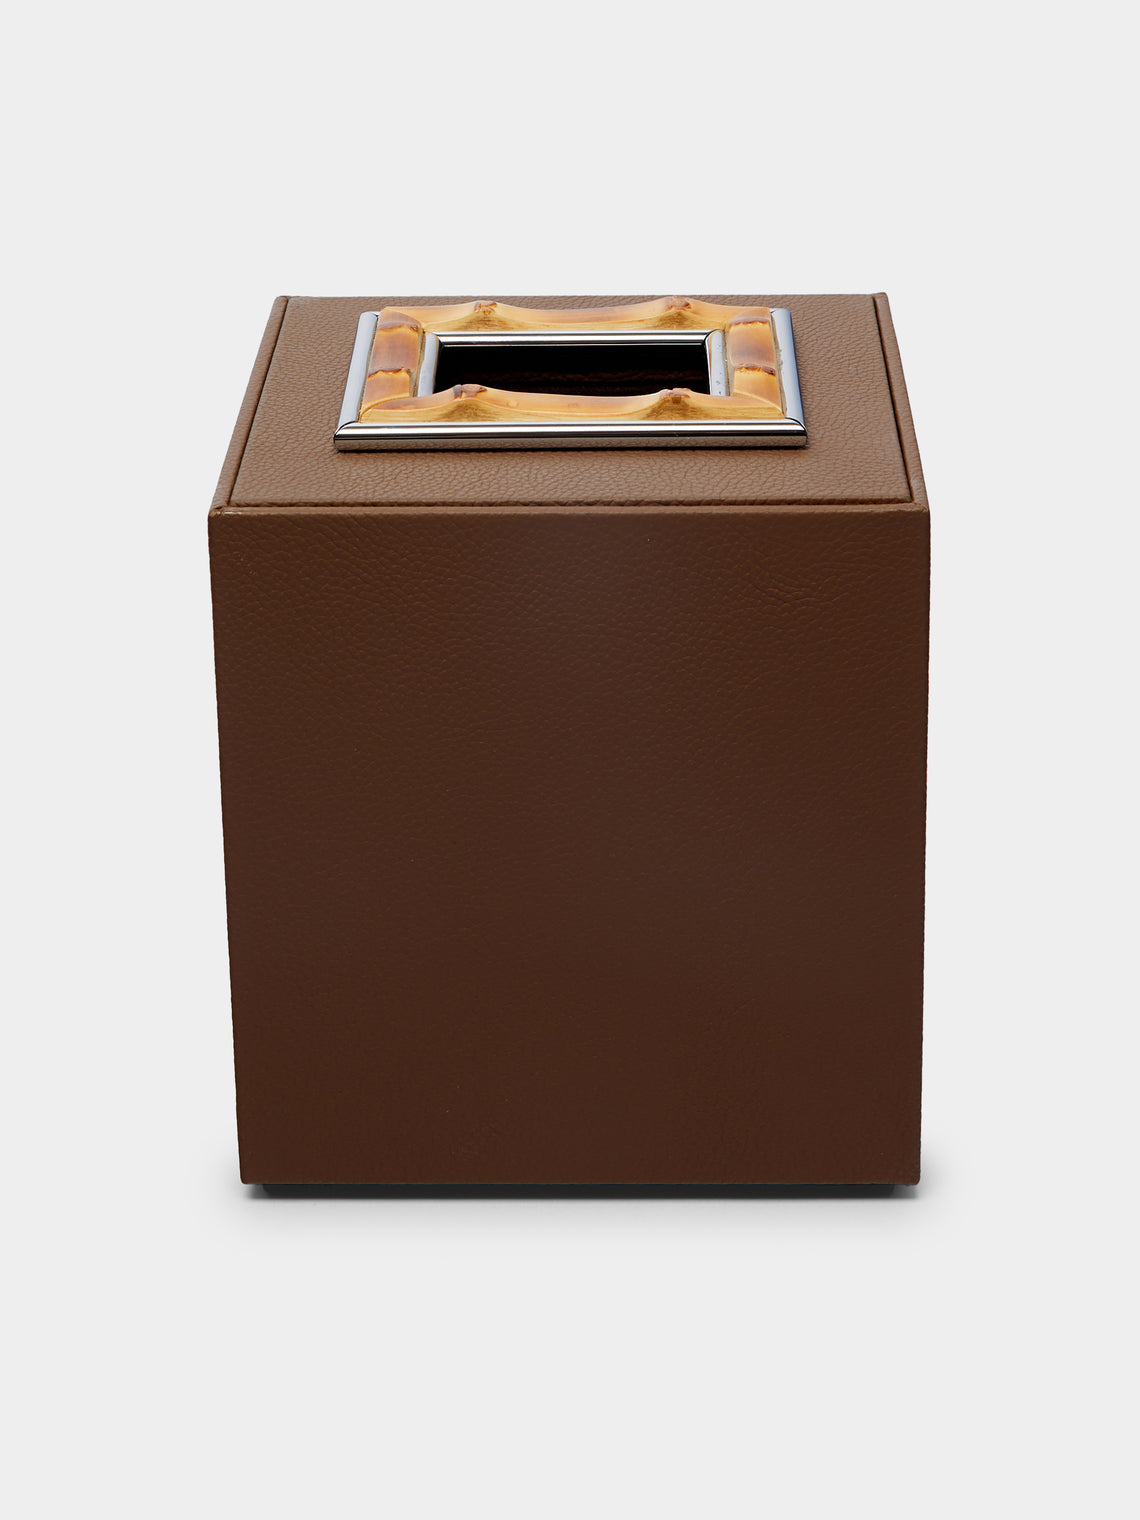 Lorenzi Milano - Bamboo and Leather Tissue Box -  - ABASK - 